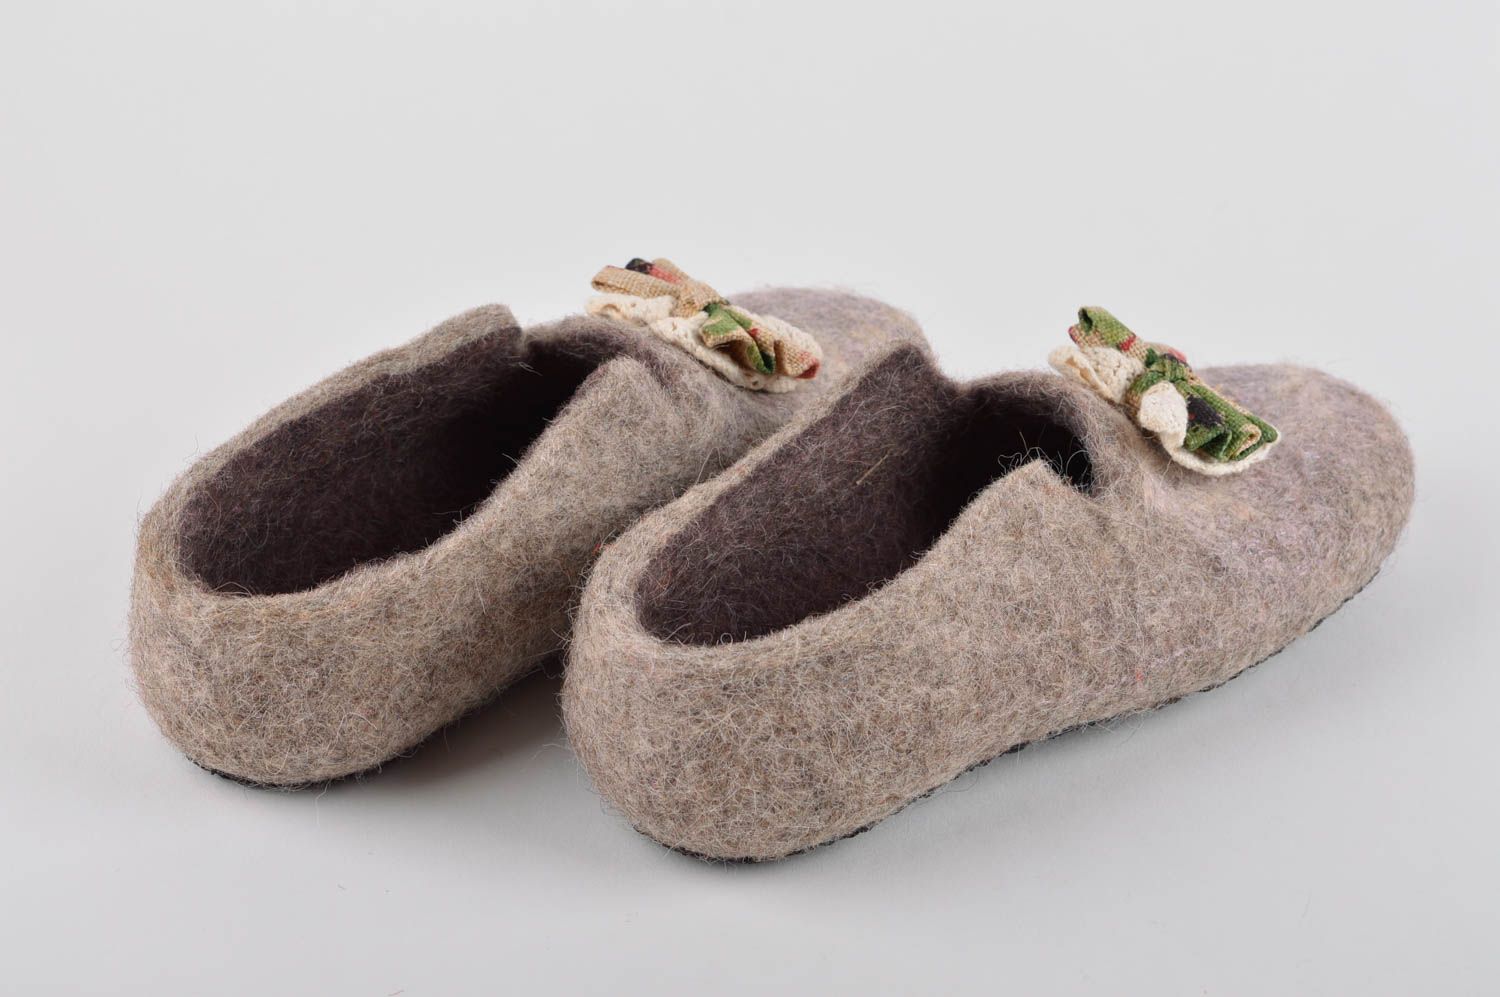 Handmade gefilzte Pantoffeln schöne Hausschuhe warme Damen Hausschuhe grau foto 3